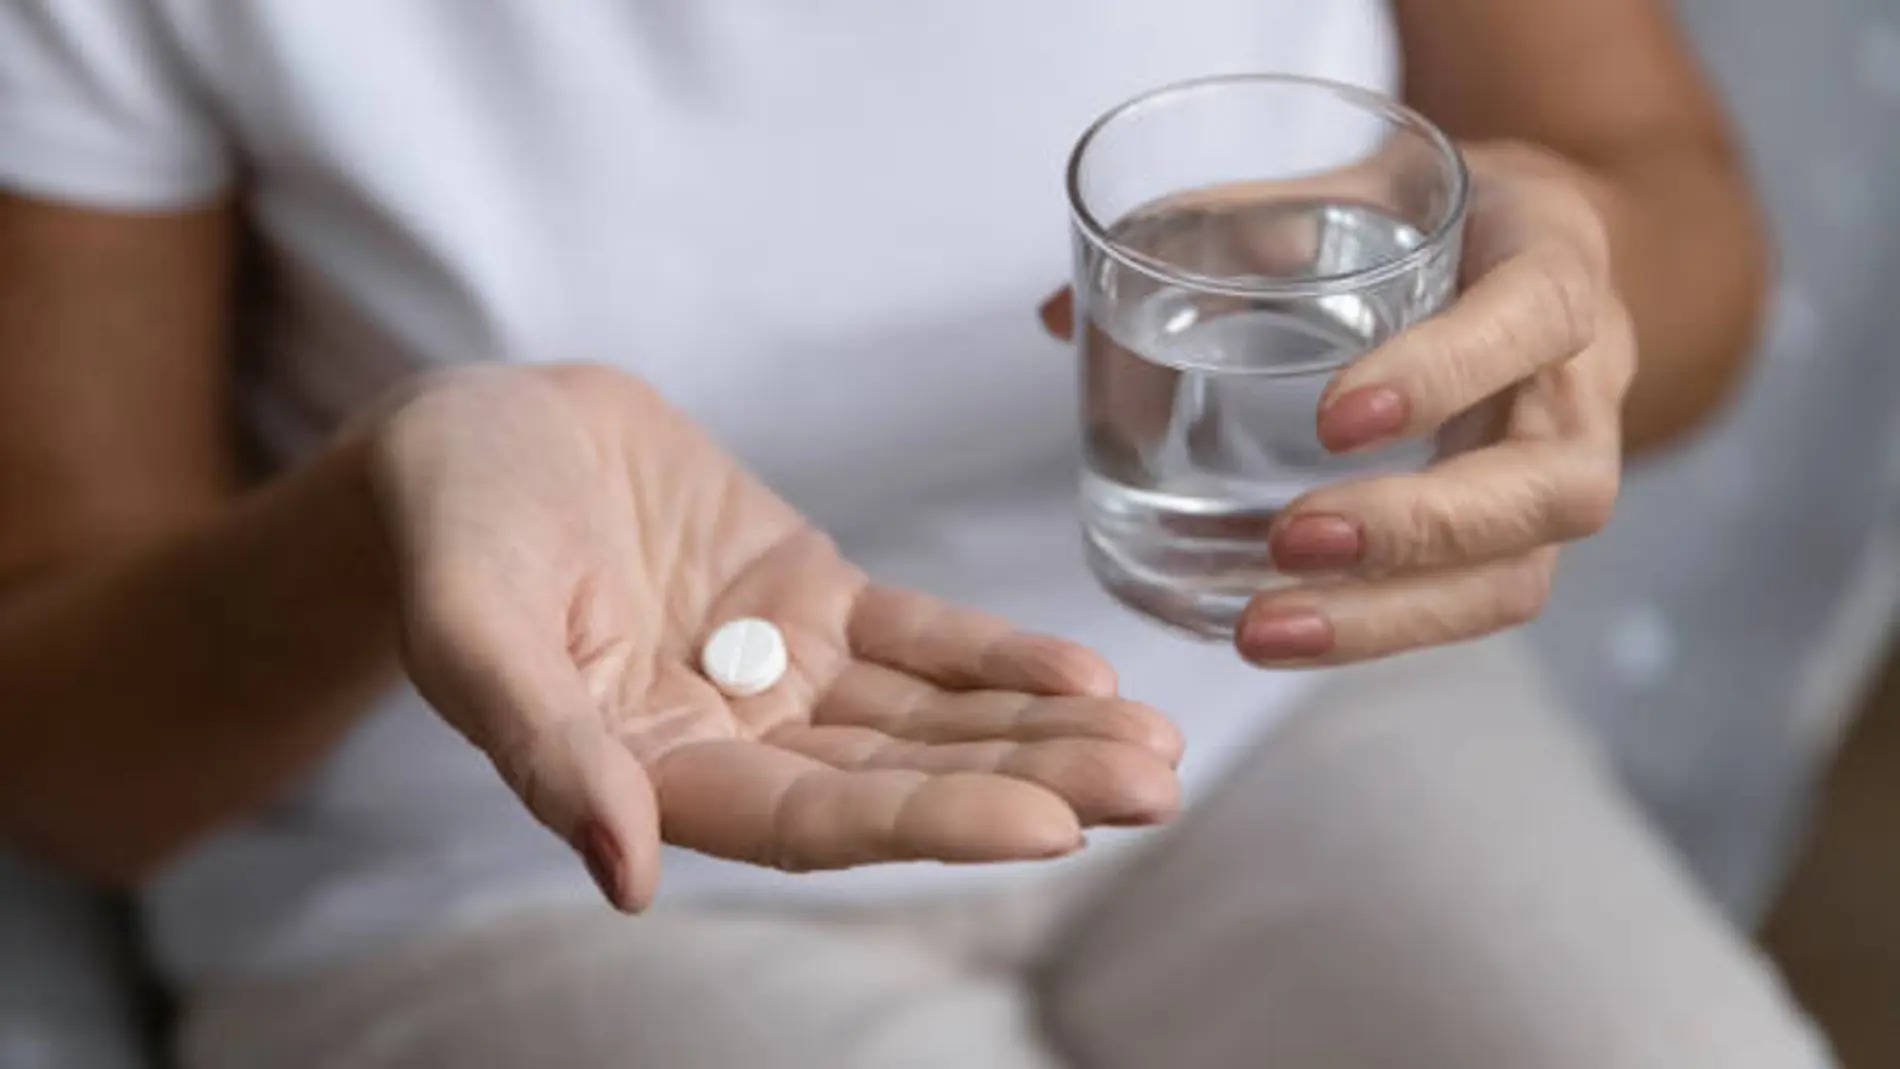 Aspirina activa genes protectores frente al cáncer colorrectal